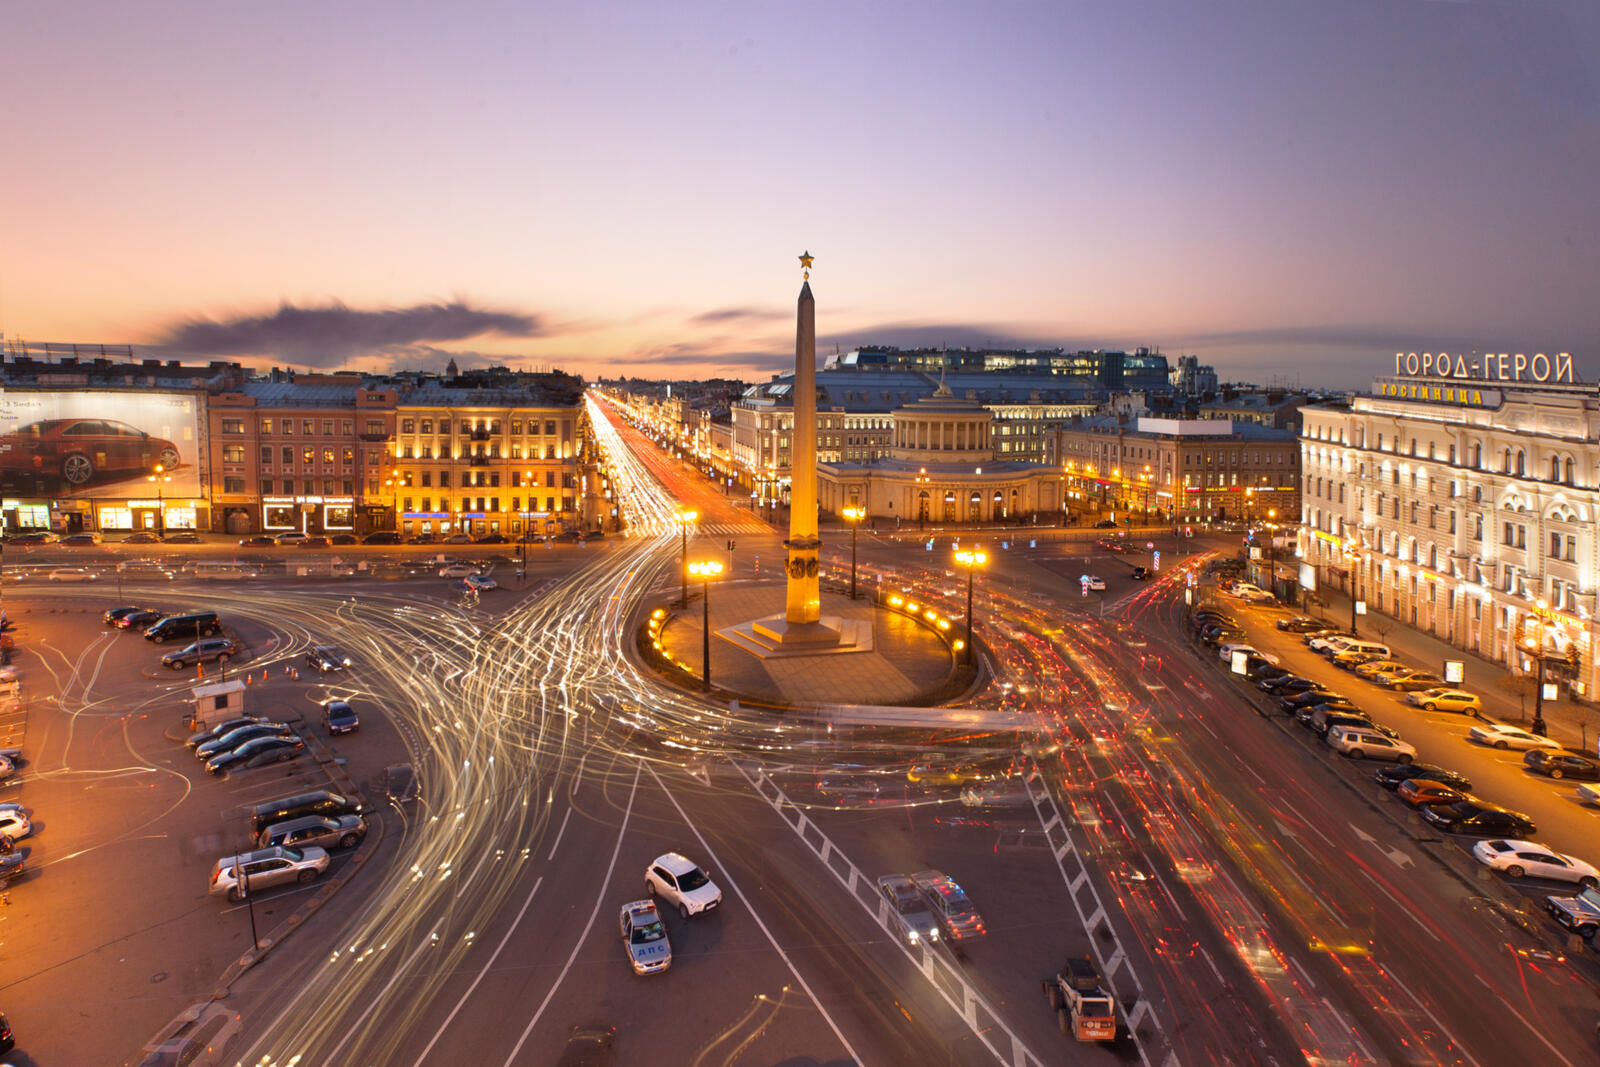 Обои Санкт-Петербург город герой центр столицы на рабочий стол